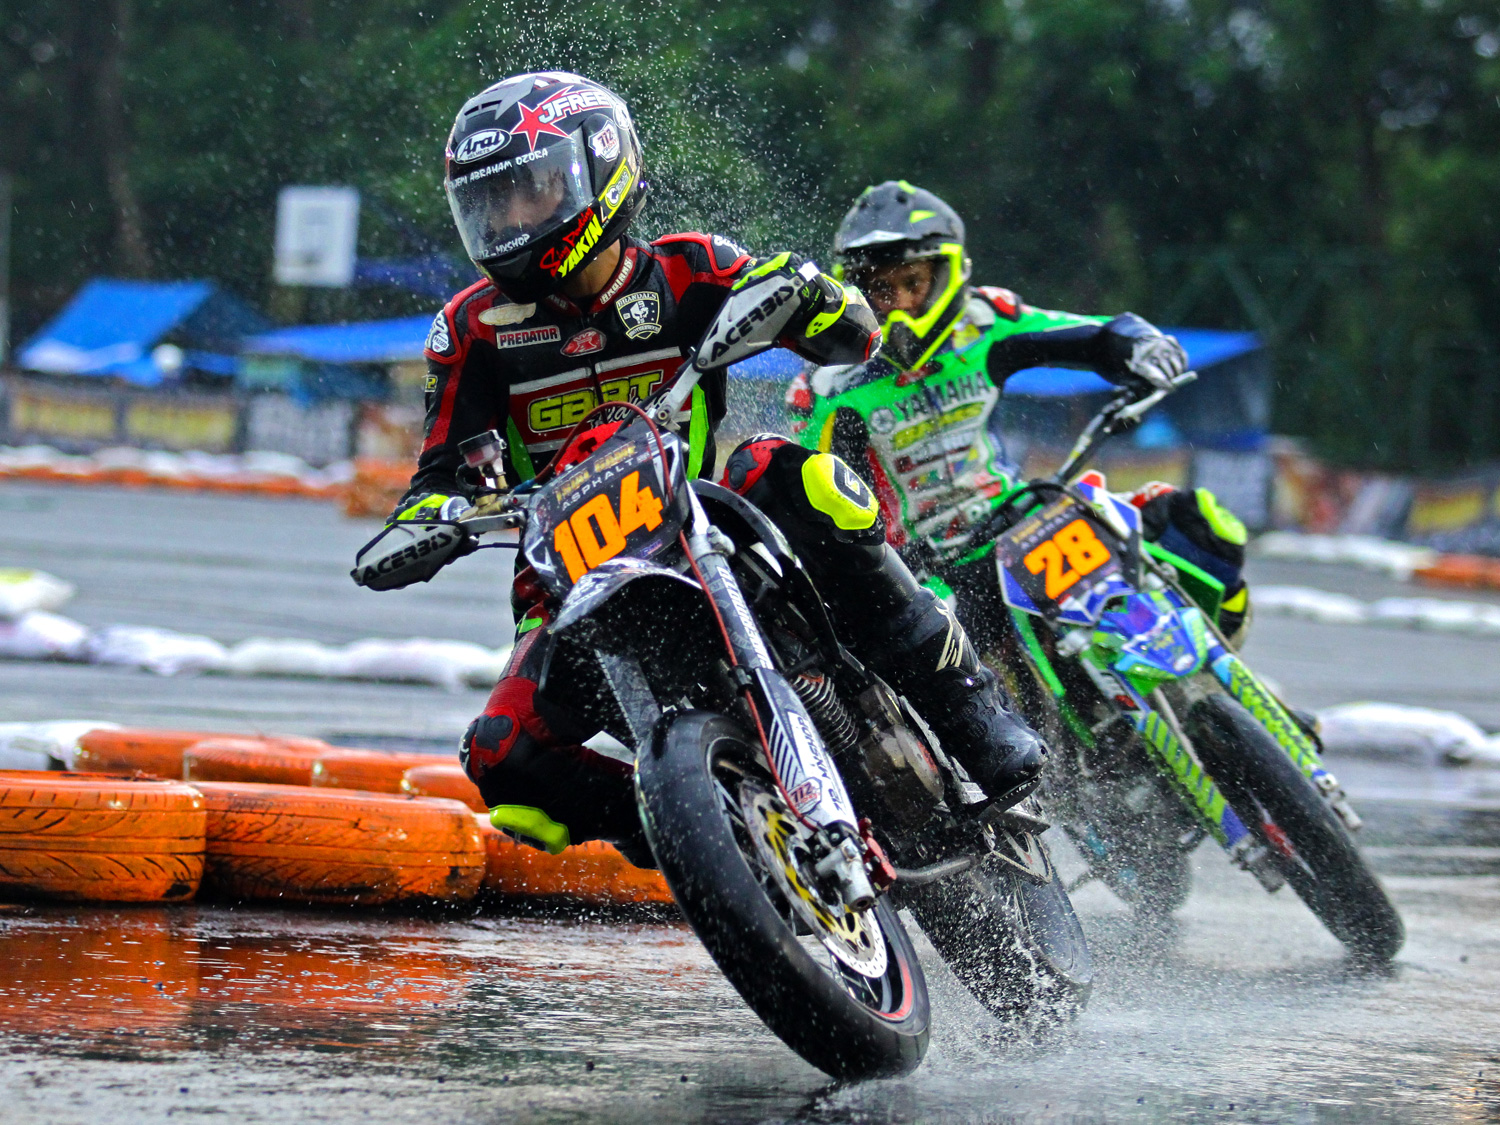 Meskipun sirkuit basah karena hujan, tidak membuat para pembalap menurunkan kecepatan motornya